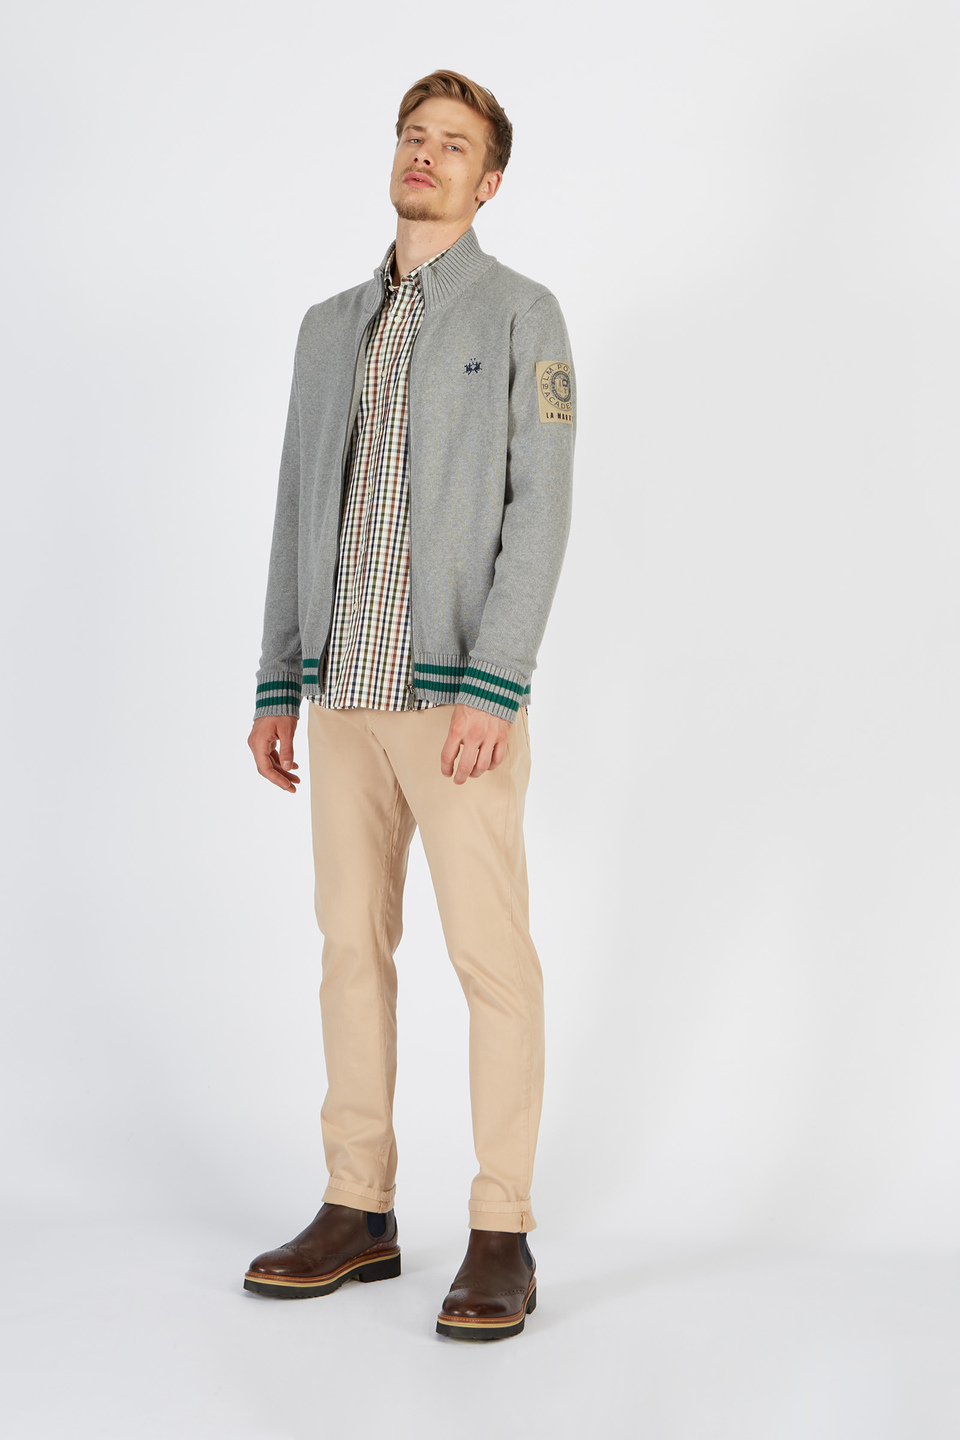 Herren Zip Front Sweatshirt aus Baumwolle 100% Comfort Fit | La Martina - Official Online Shop